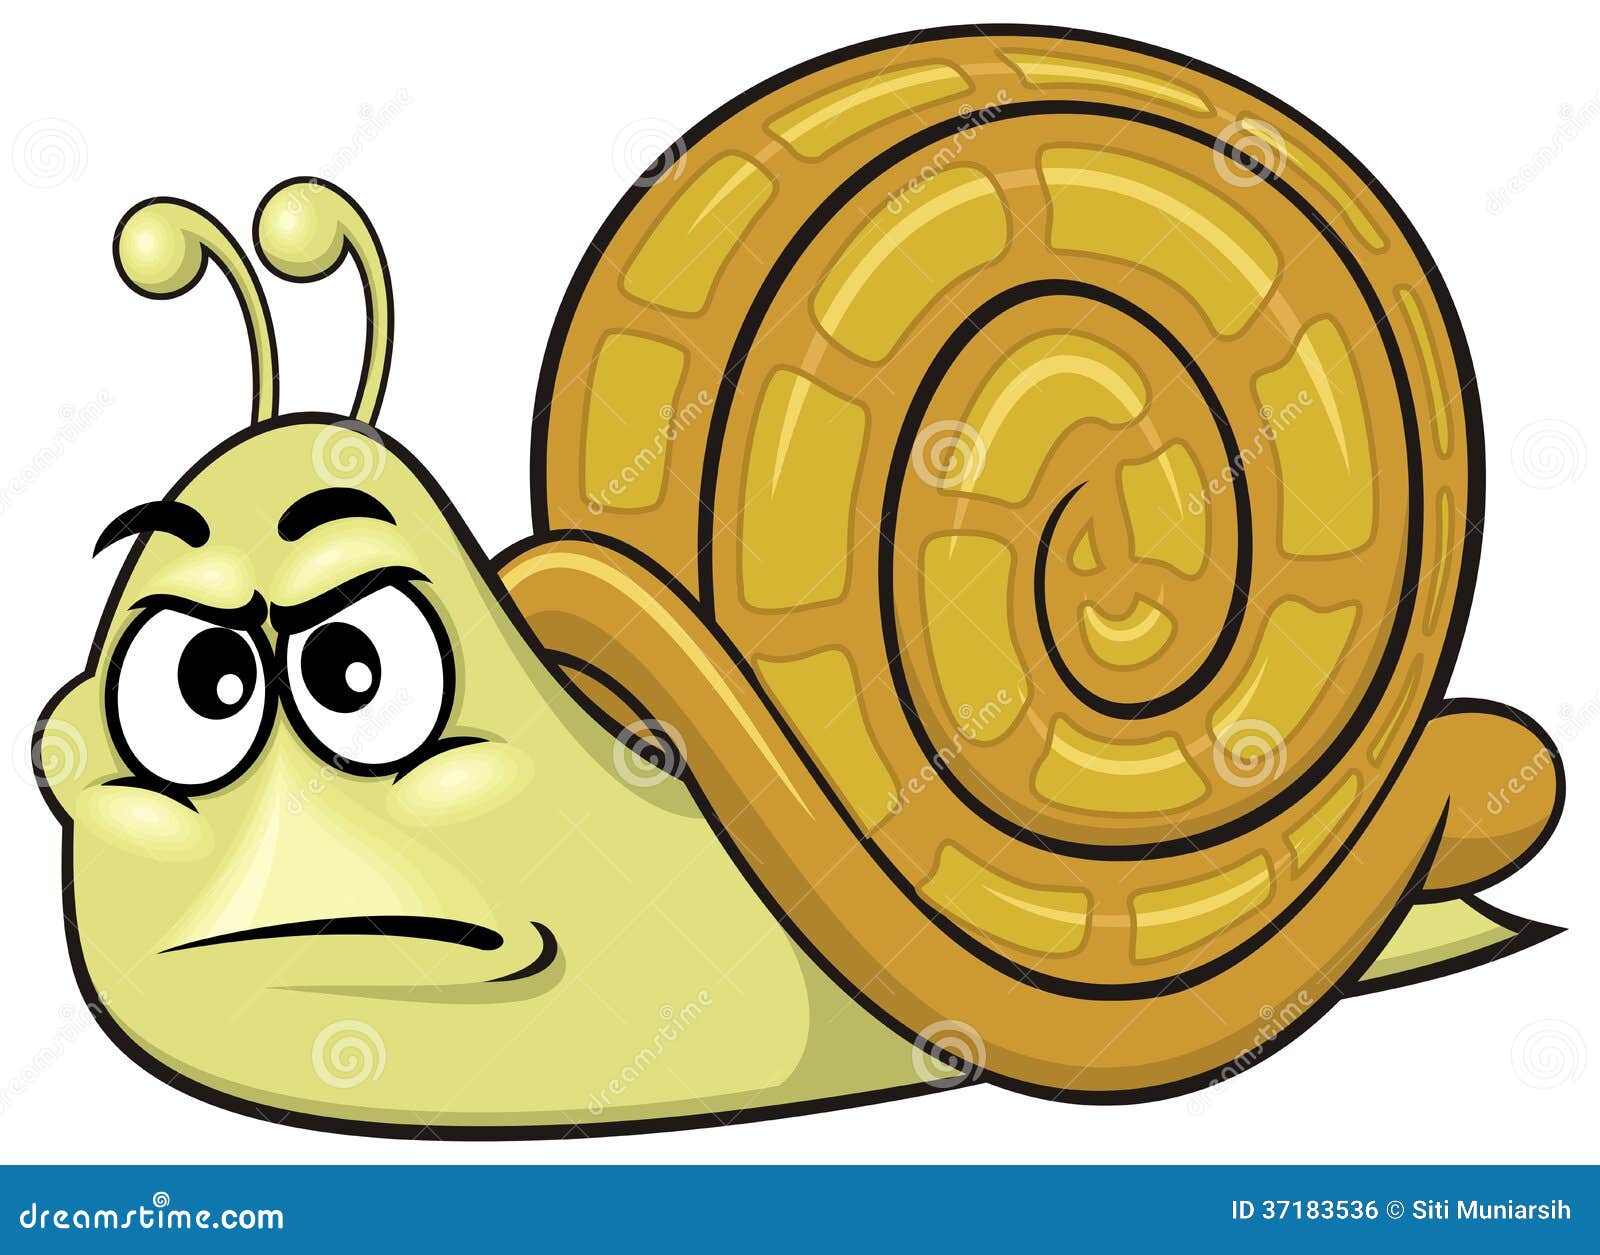 Cartoon snail 01 stock vector. Illustration of symbol - 37183536